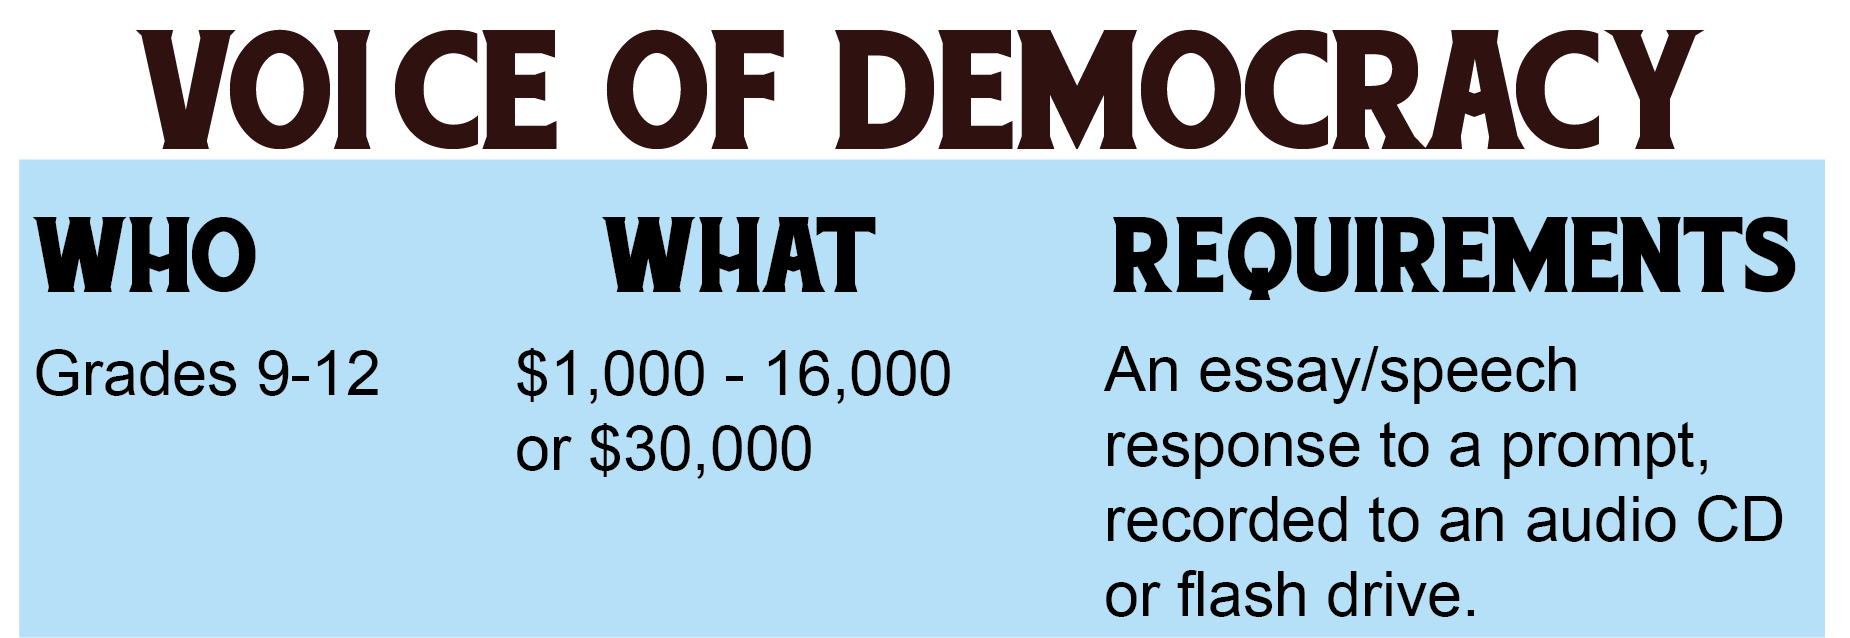 VOICE OF DEMOCRACY 2018 – 2019